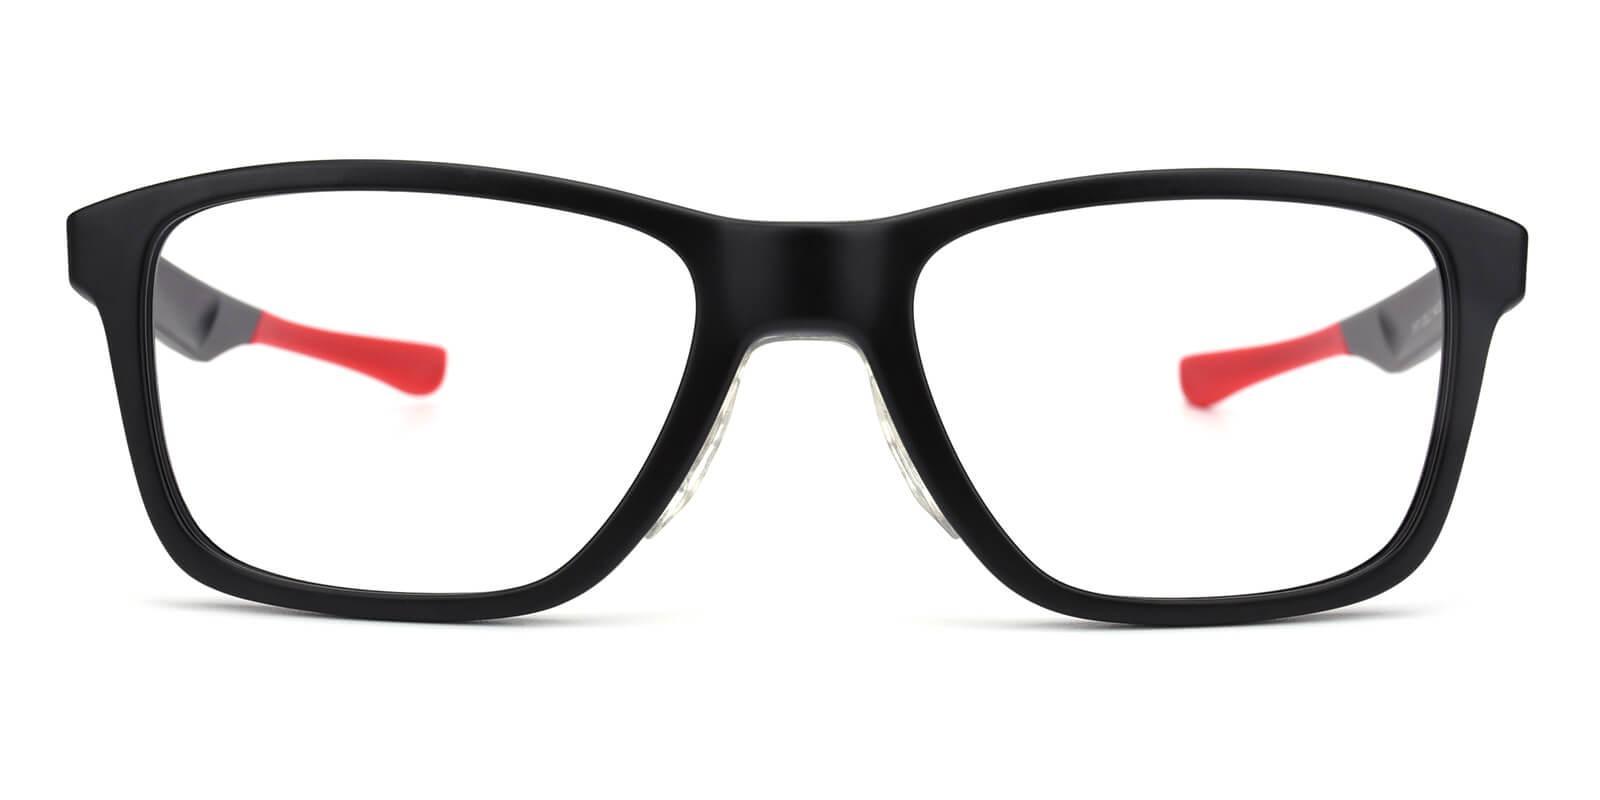 Poise Red TR SportsGlasses , UniversalBridgeFit Frames from ABBE Glasses